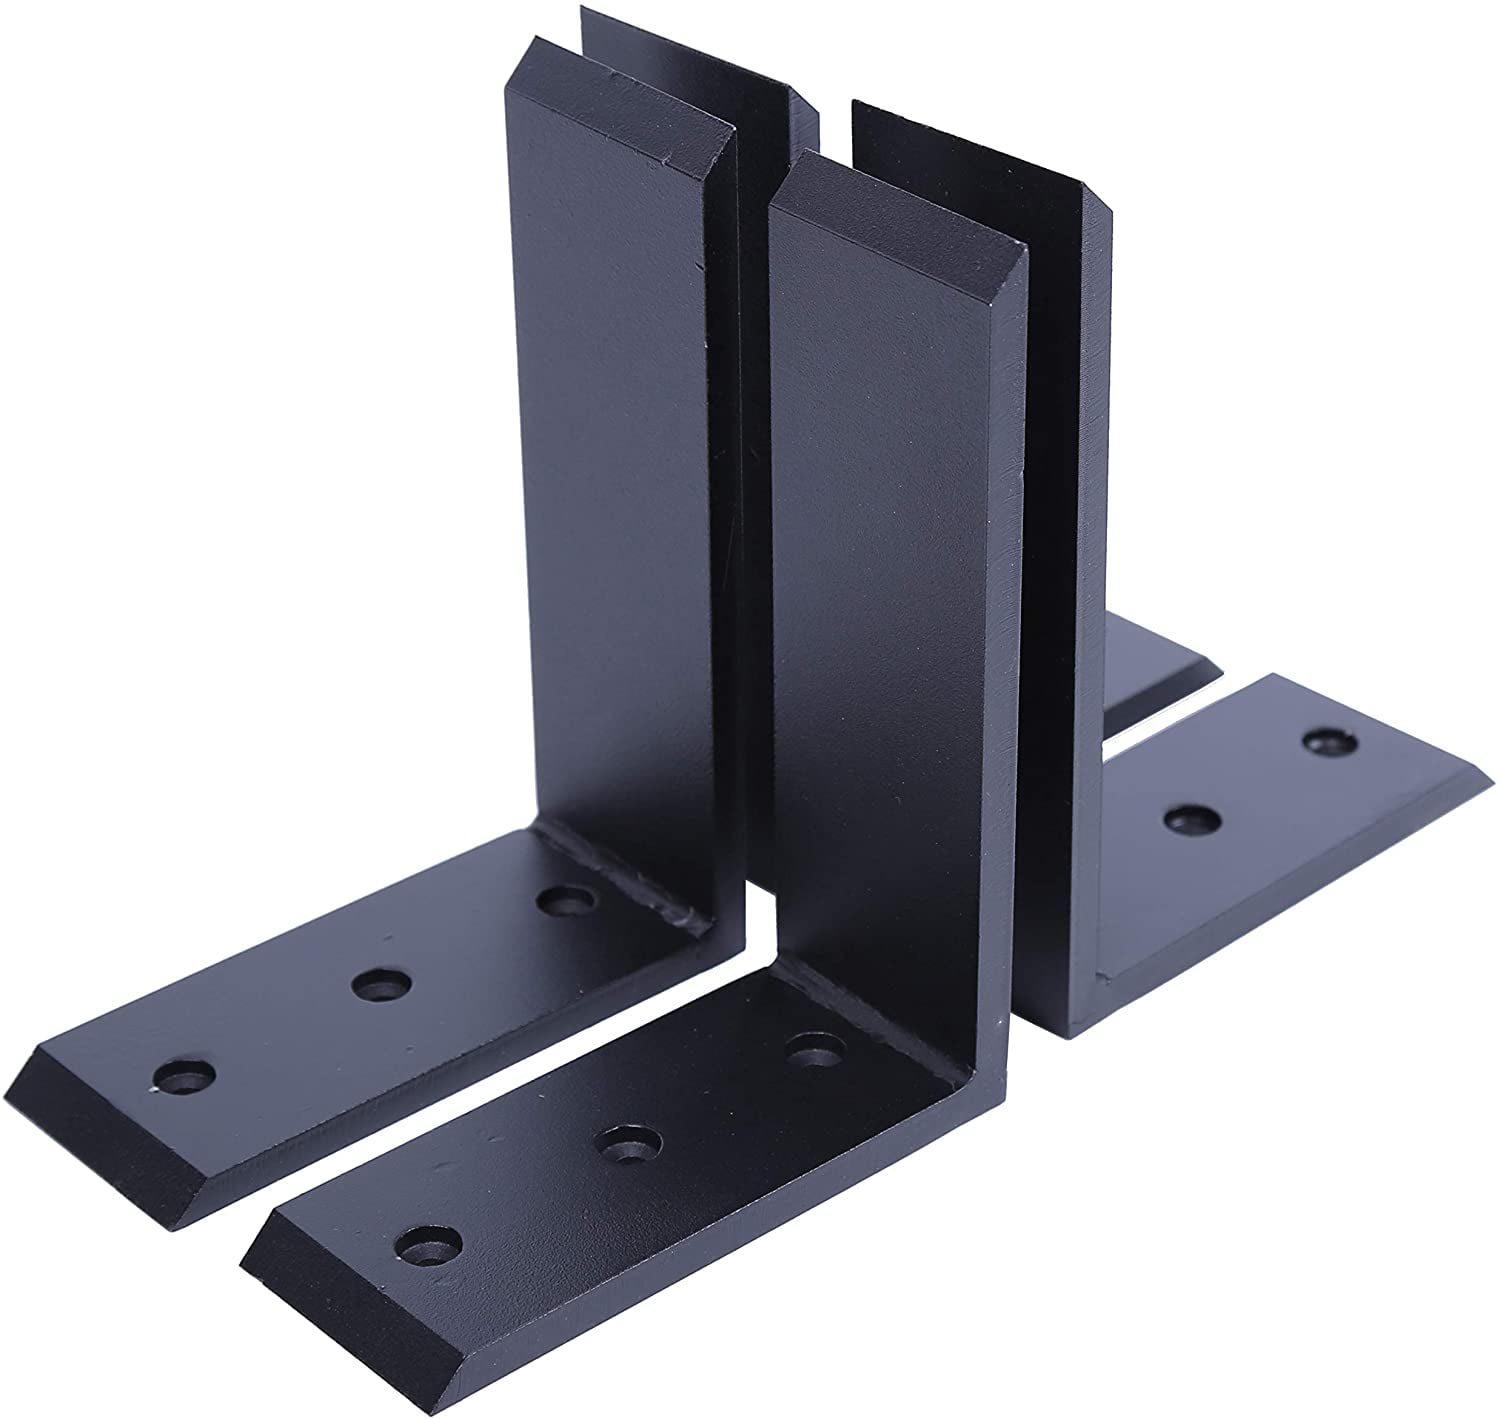 4 Heavy Duty Black Steel 6”x8” Countertop Support Brackets Corbel Lot L Shelf 